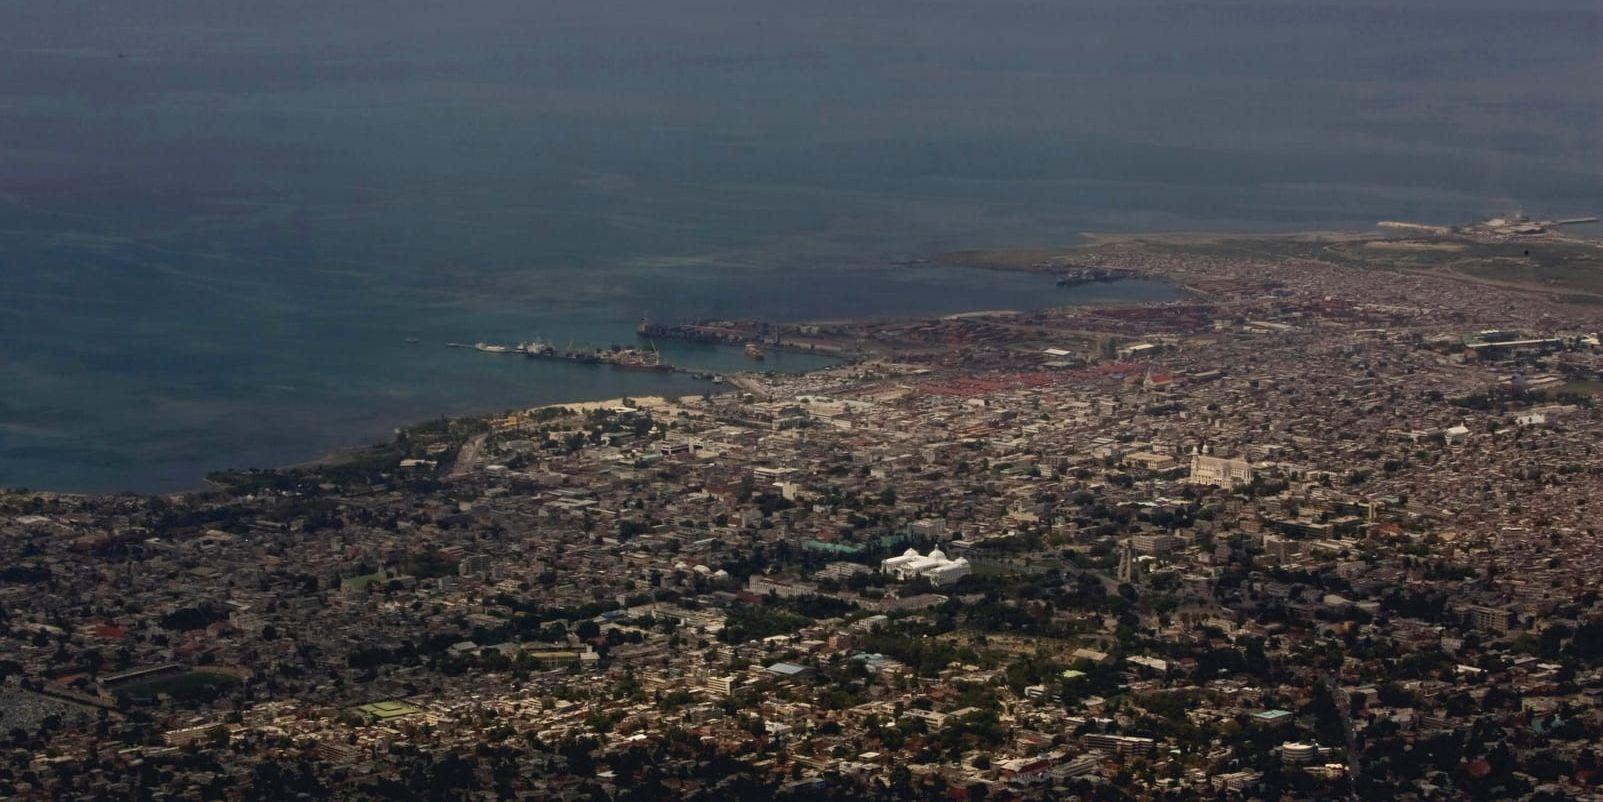 Vy över Port-au-Prince, huvudstad i Haiti, ett av de länder som Trump rapporteras ha pratat om.